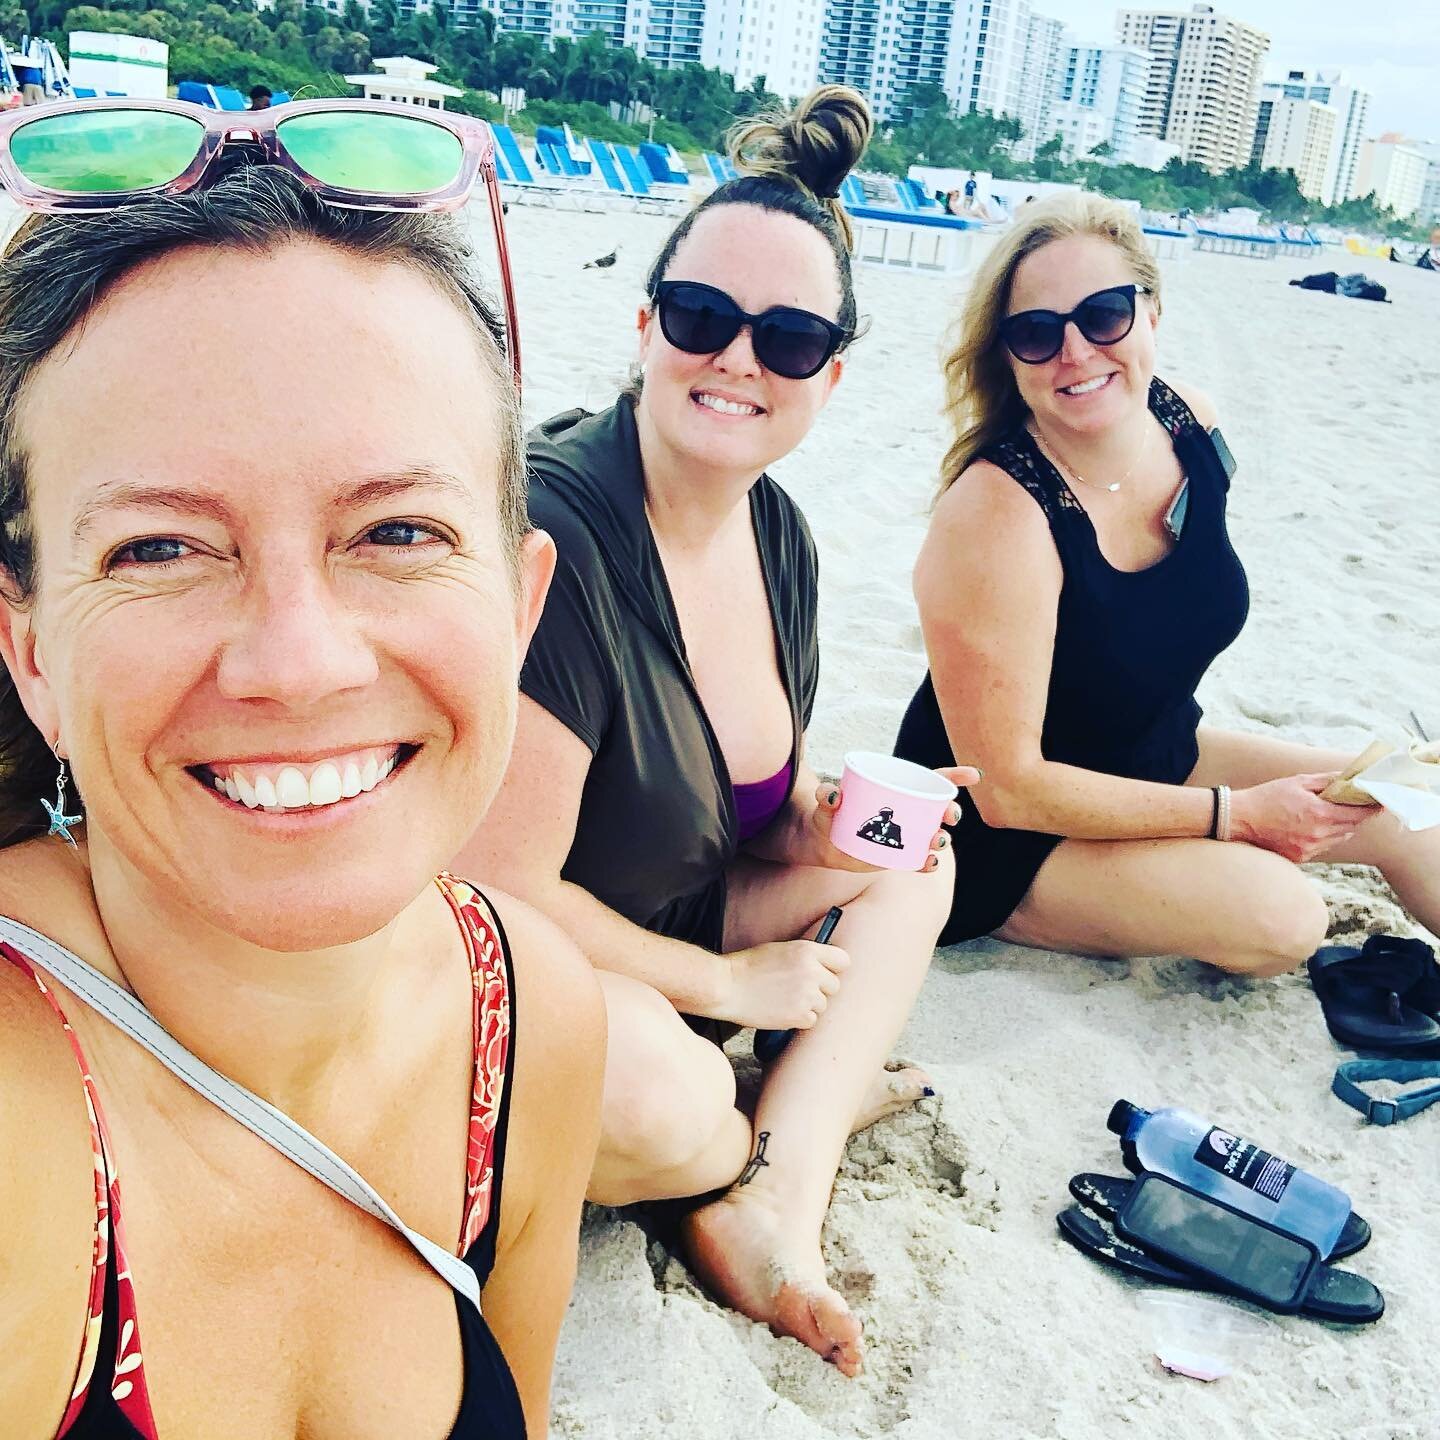 Birthday weekend getaway was a blast. Love these ladies. Thanks for the fabulous time, Miami. #traveldiary #girlstrip #birthdaygirl #weekendvibes #miami #bienvenidoamiami #bikiniseason #beachbabes